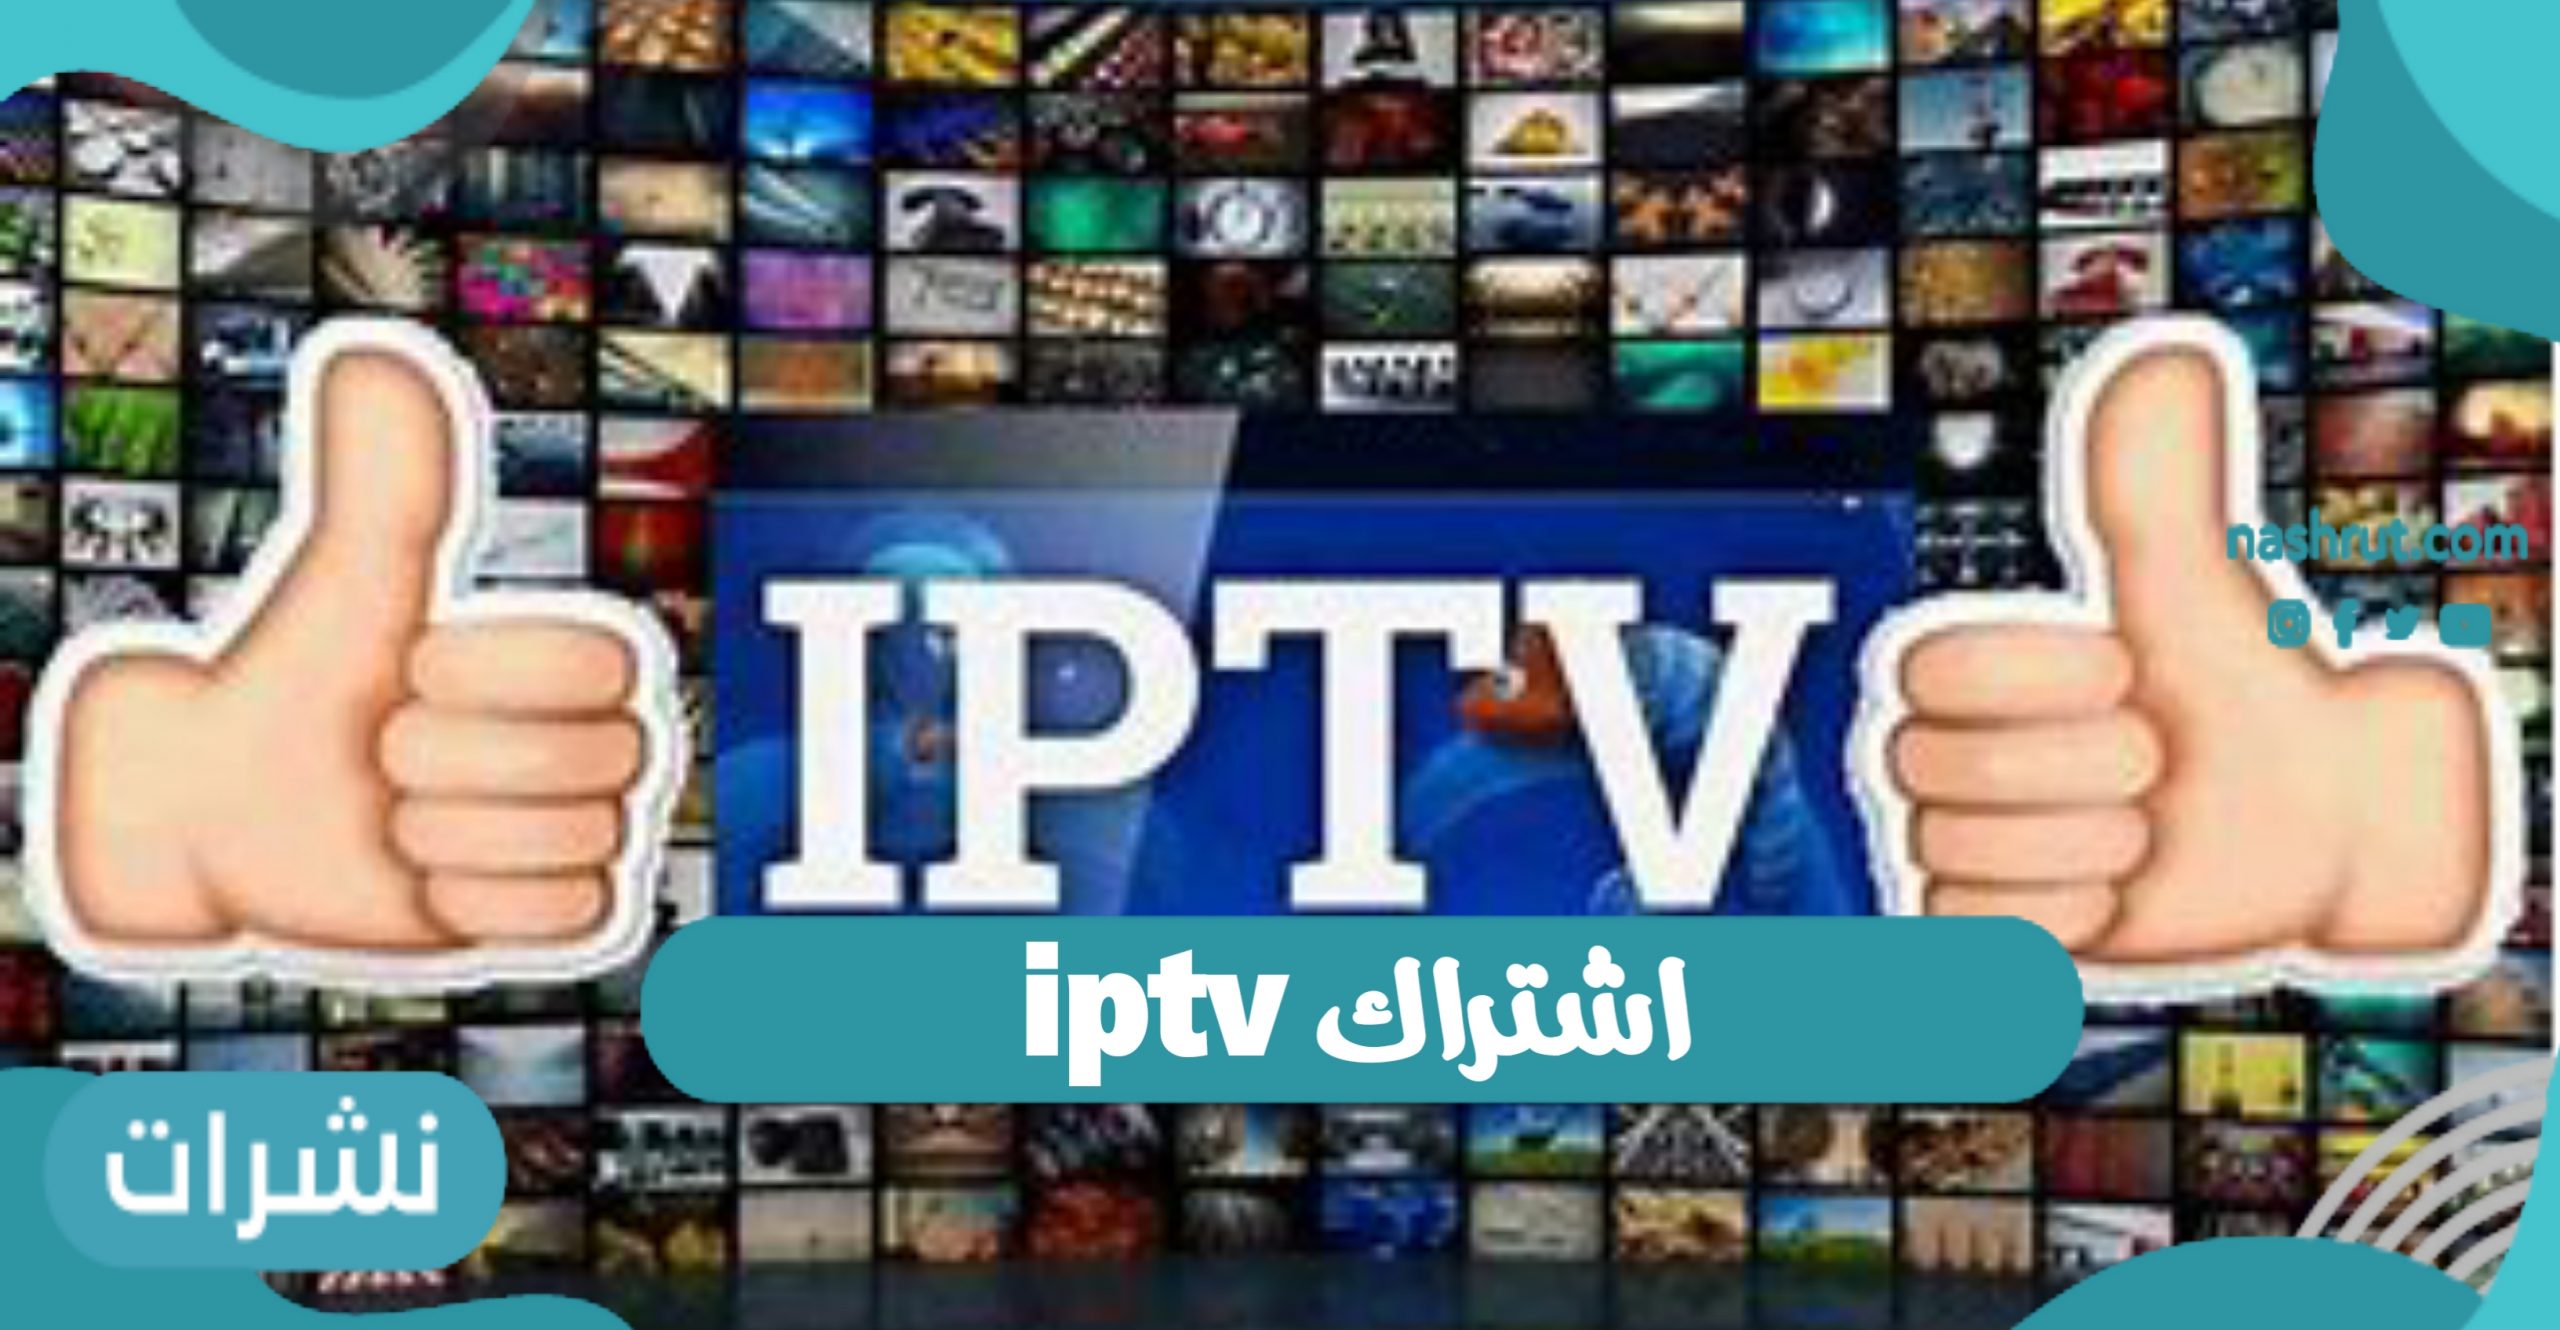 اشتراك iptv أحد التقنيات الحديثة للبث التليفزيوني للعام 2021 نشرات